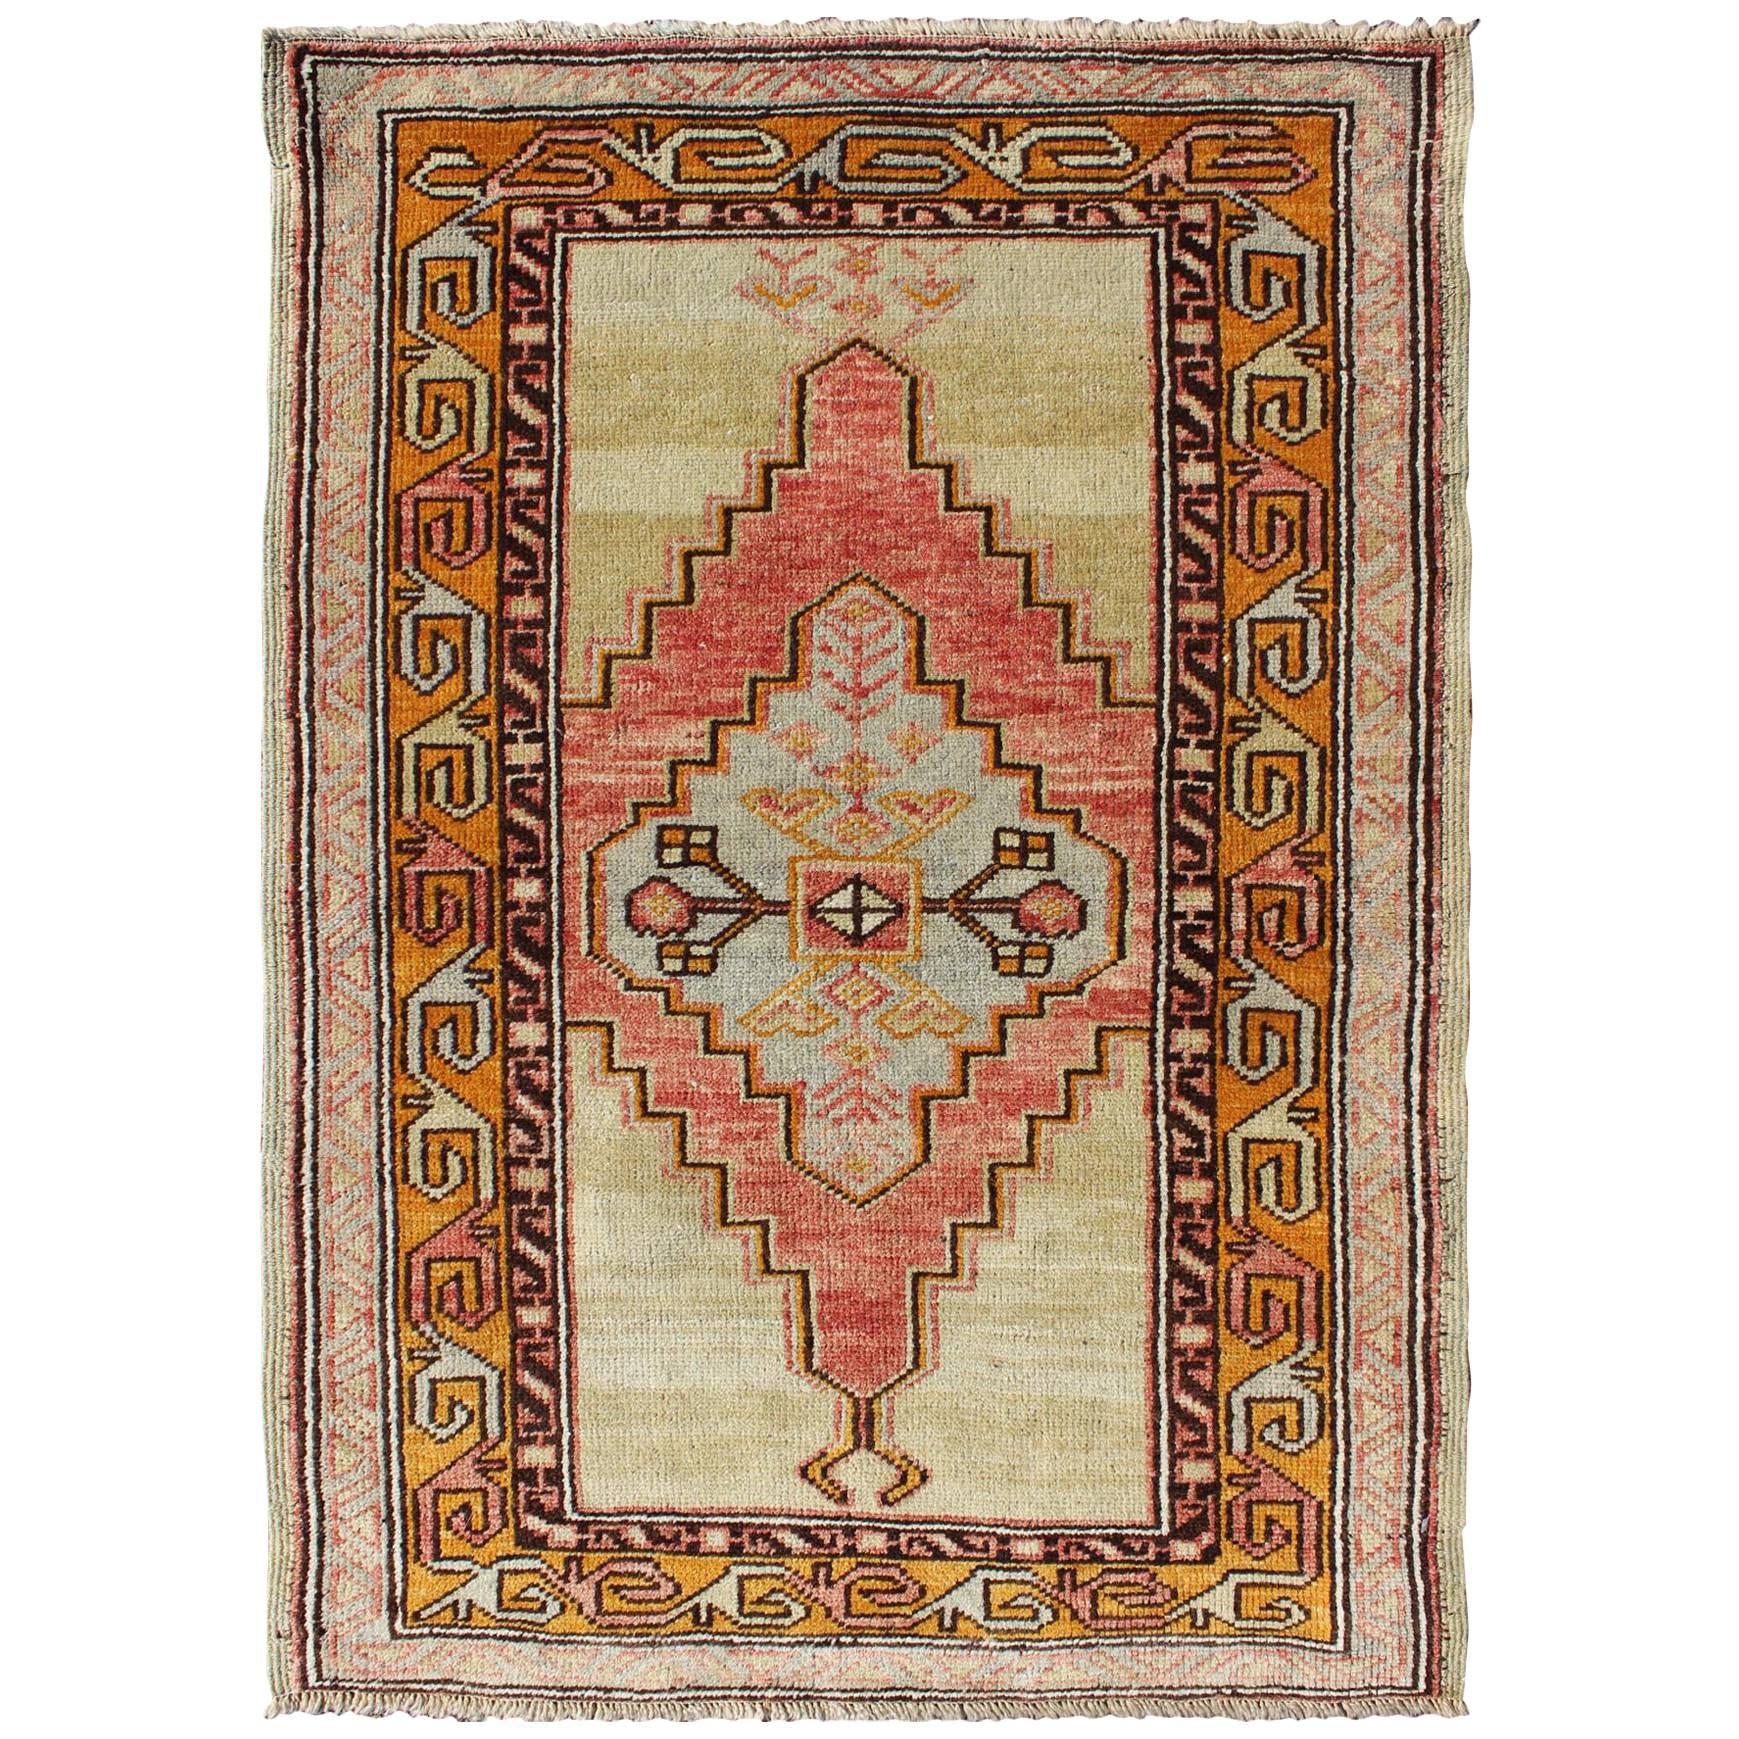 Bunt stilisierter antiker türkischer Oushak-Teppich mit mehrlagigem Stammesmedaillon